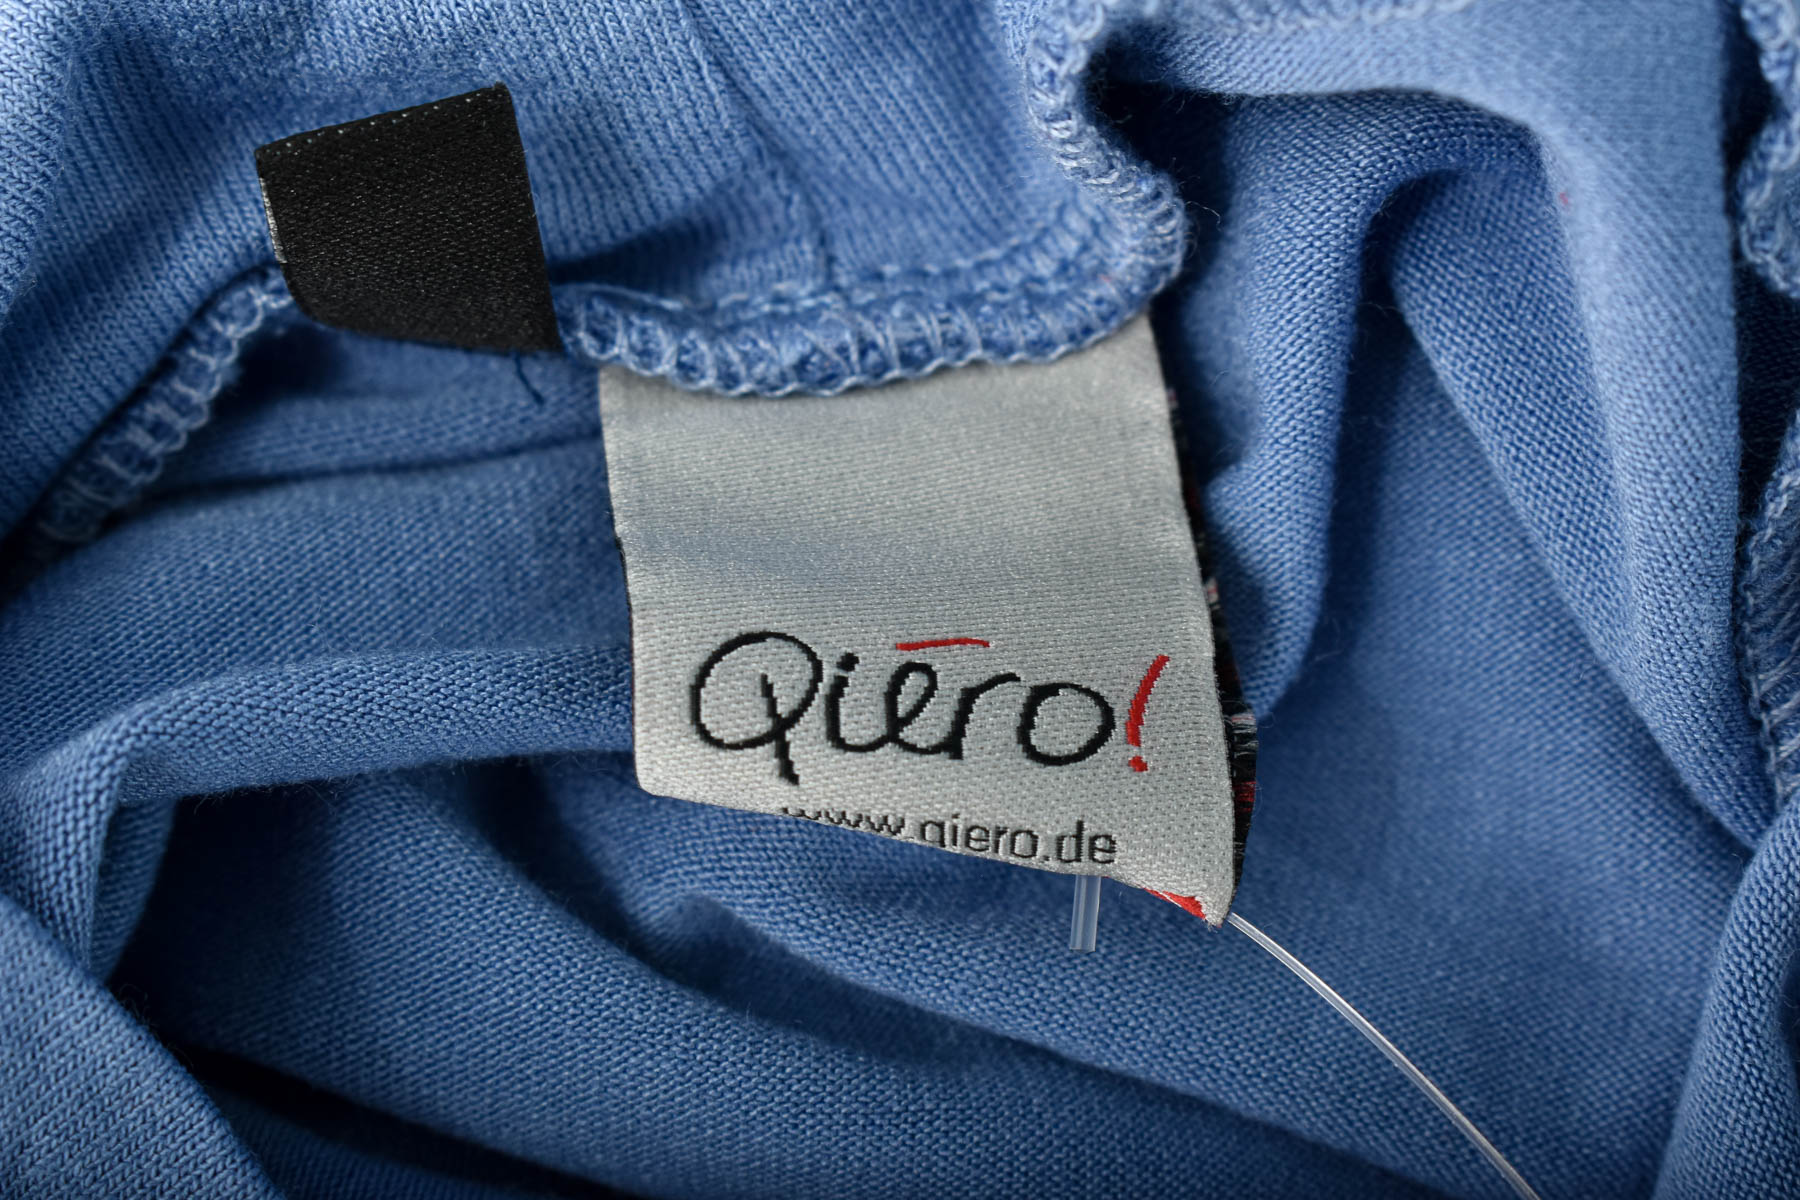 Women's t-shirt - Qiero! - 2